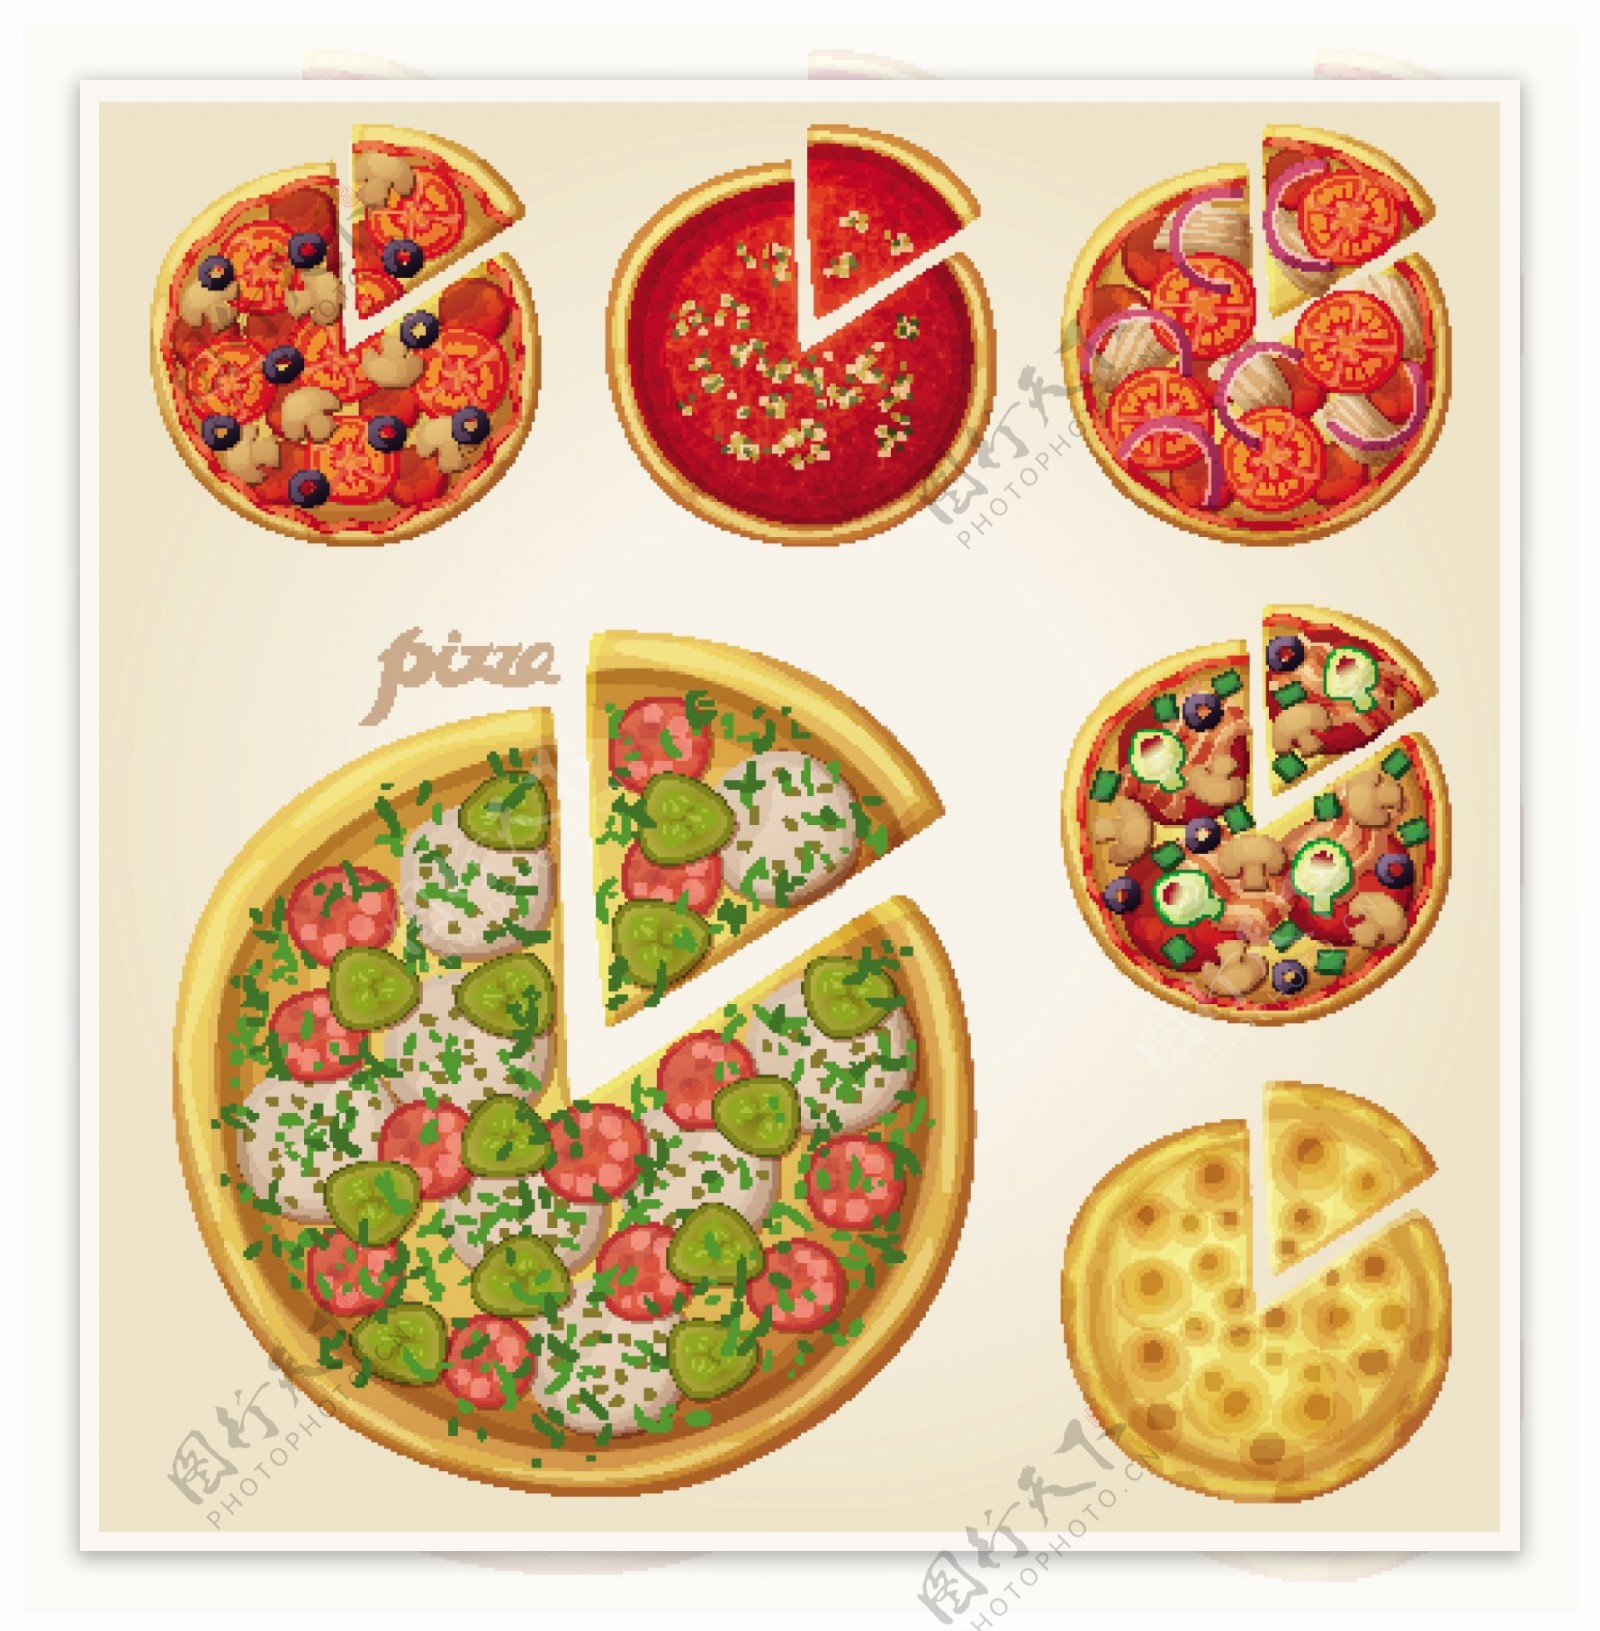 美味披萨快餐设计矢量